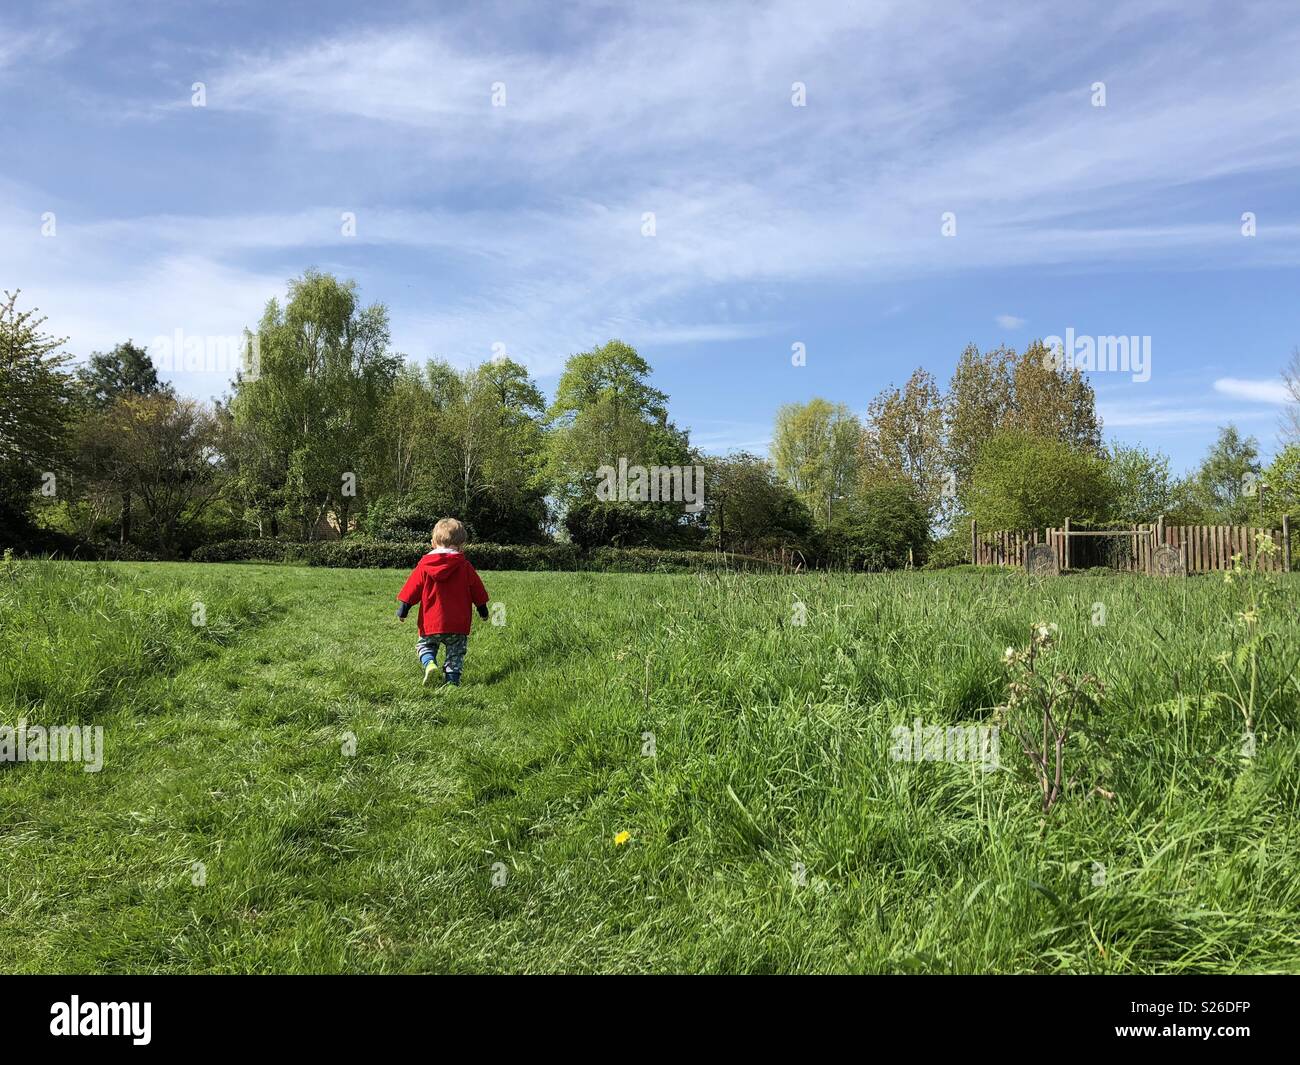 Toddler walking through field Stock Photo